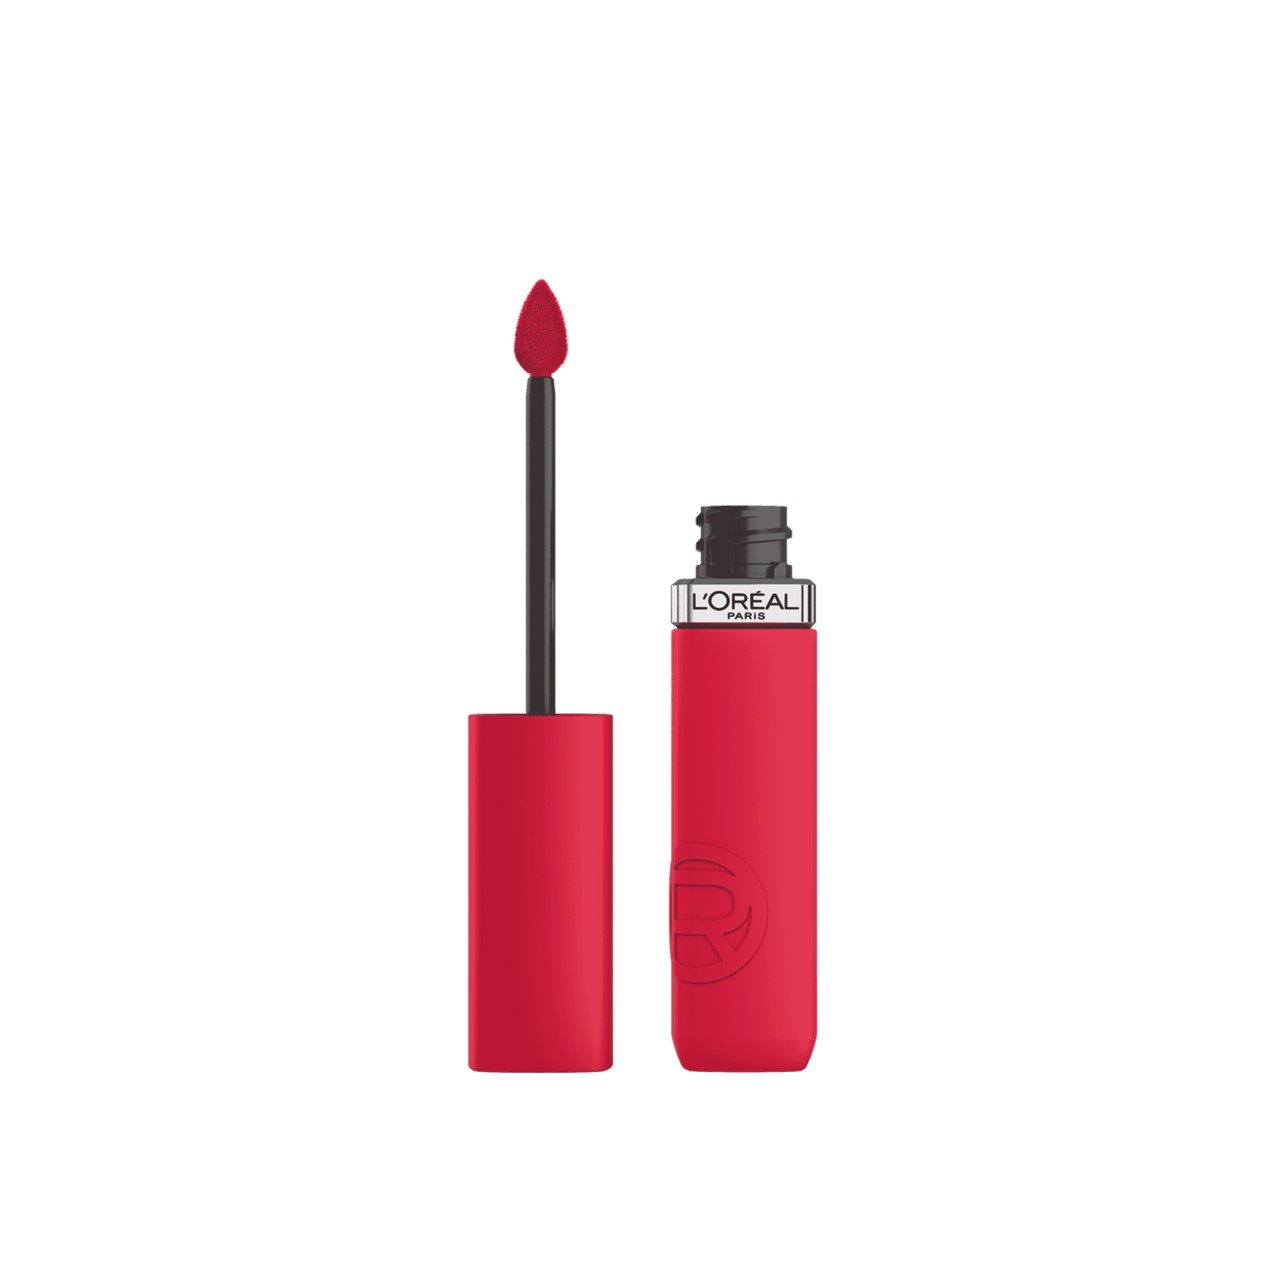 L'Oréal Paris Infallible Matte Resistance Liquid Lipstick 245 French Kiss 5ml (0.17 fl oz)